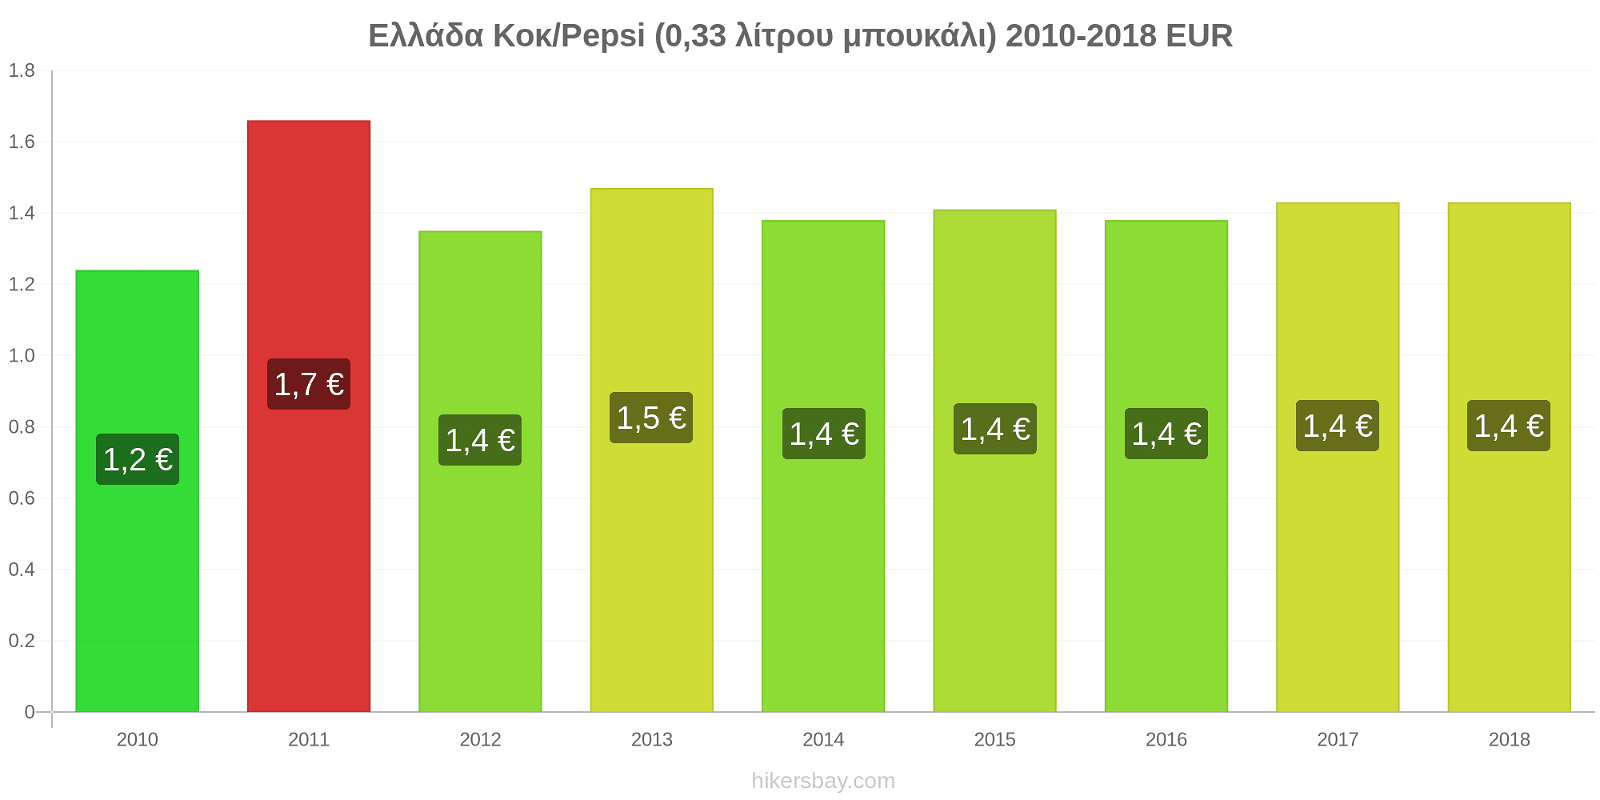 Ελλάδα αλλαγές τιμών Κοκ/Pepsi (0,33 λίτρου μπουκάλι) hikersbay.com